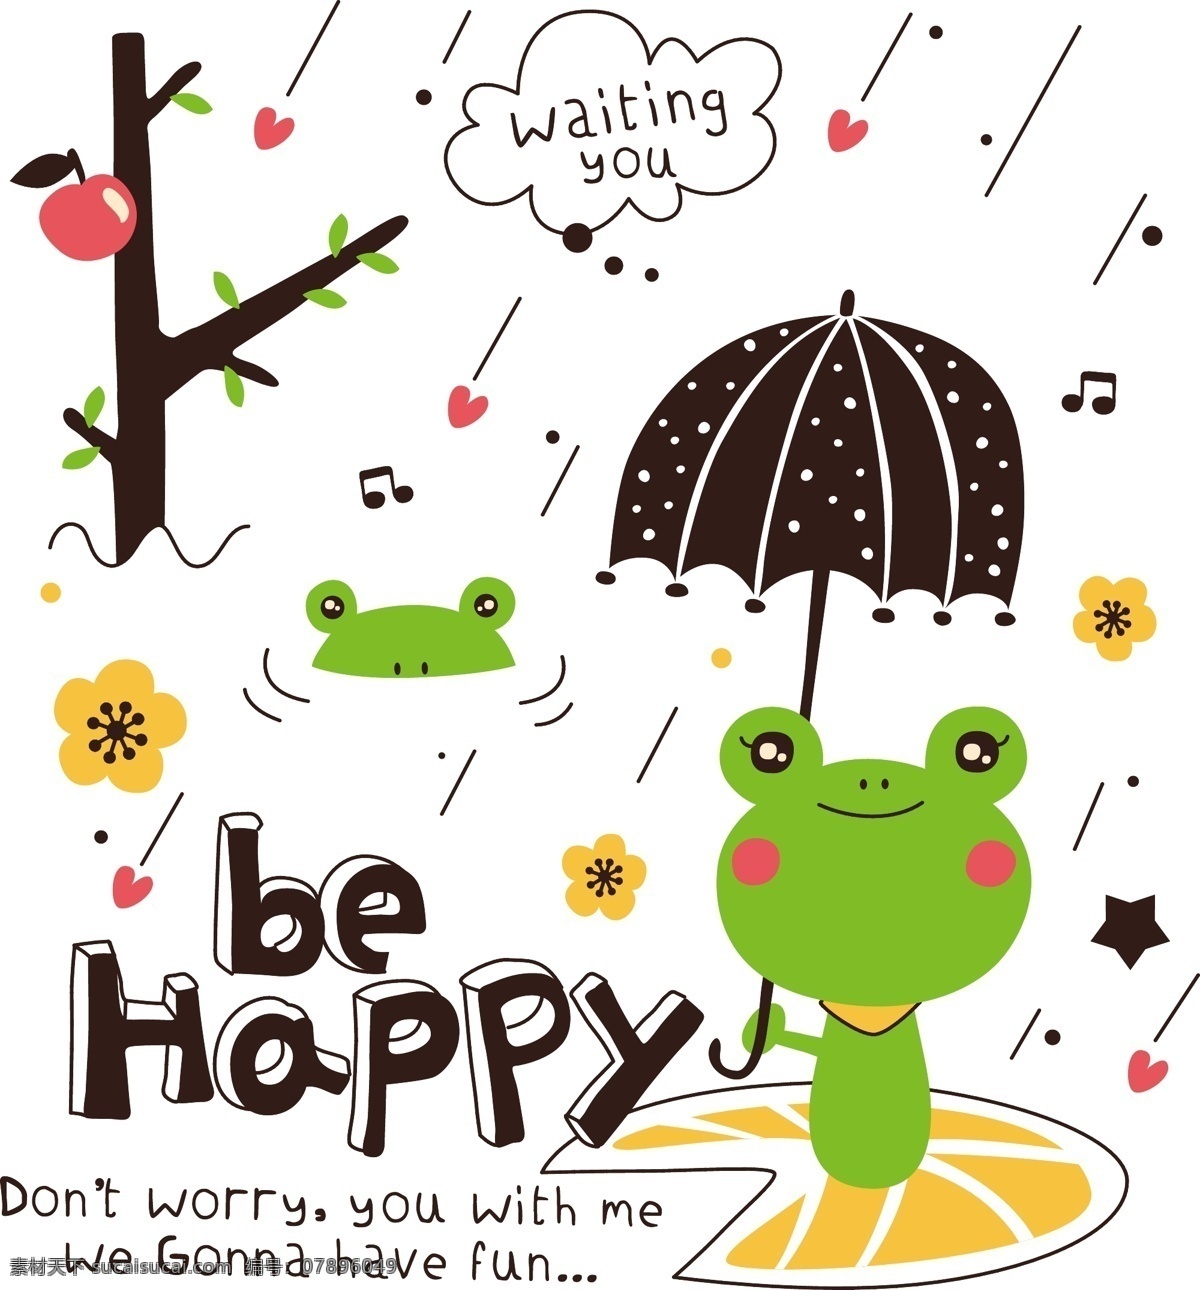 下雨 卡通 动物 矢量 青蛙 王子 雨伞 广告 创意设计 矢量素材 源文件 平面设计